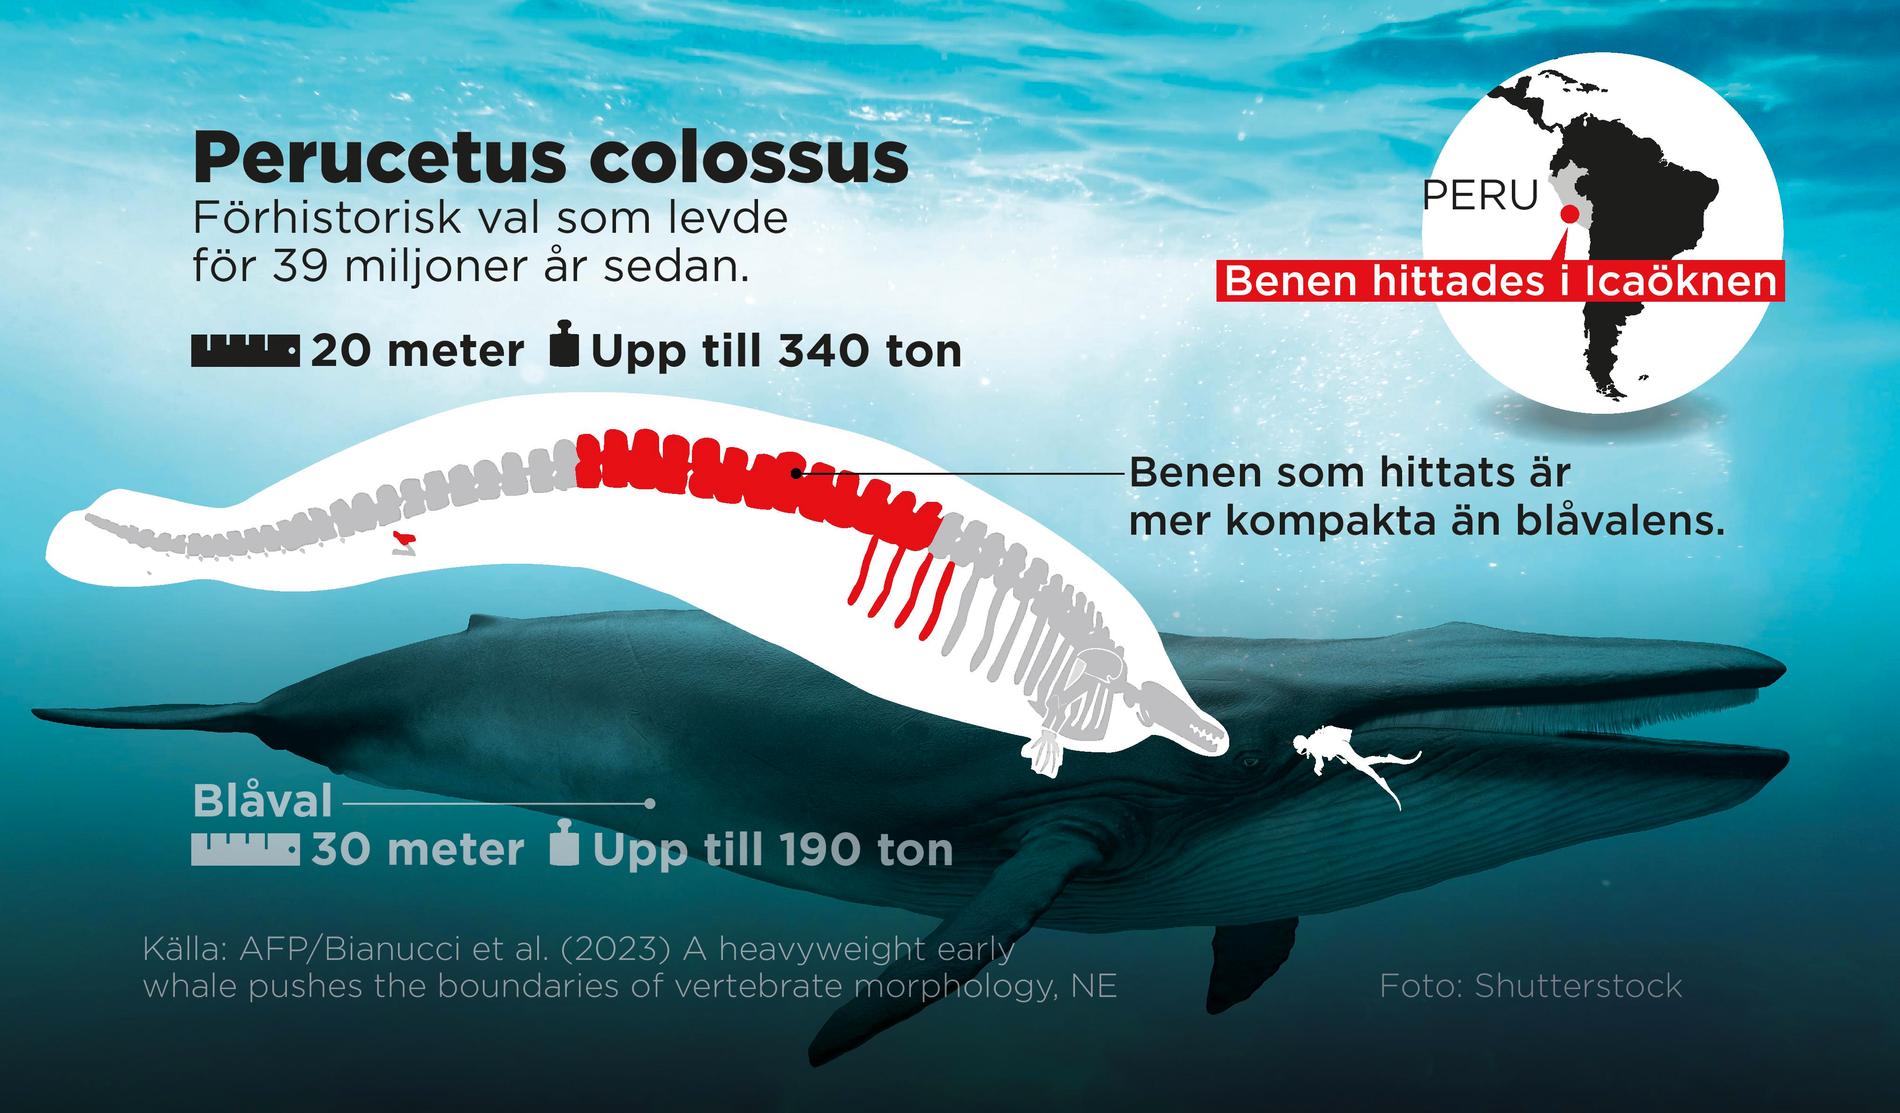 Den förhistoriska jättevalen kan vara det tyngsta djuret någonsin.